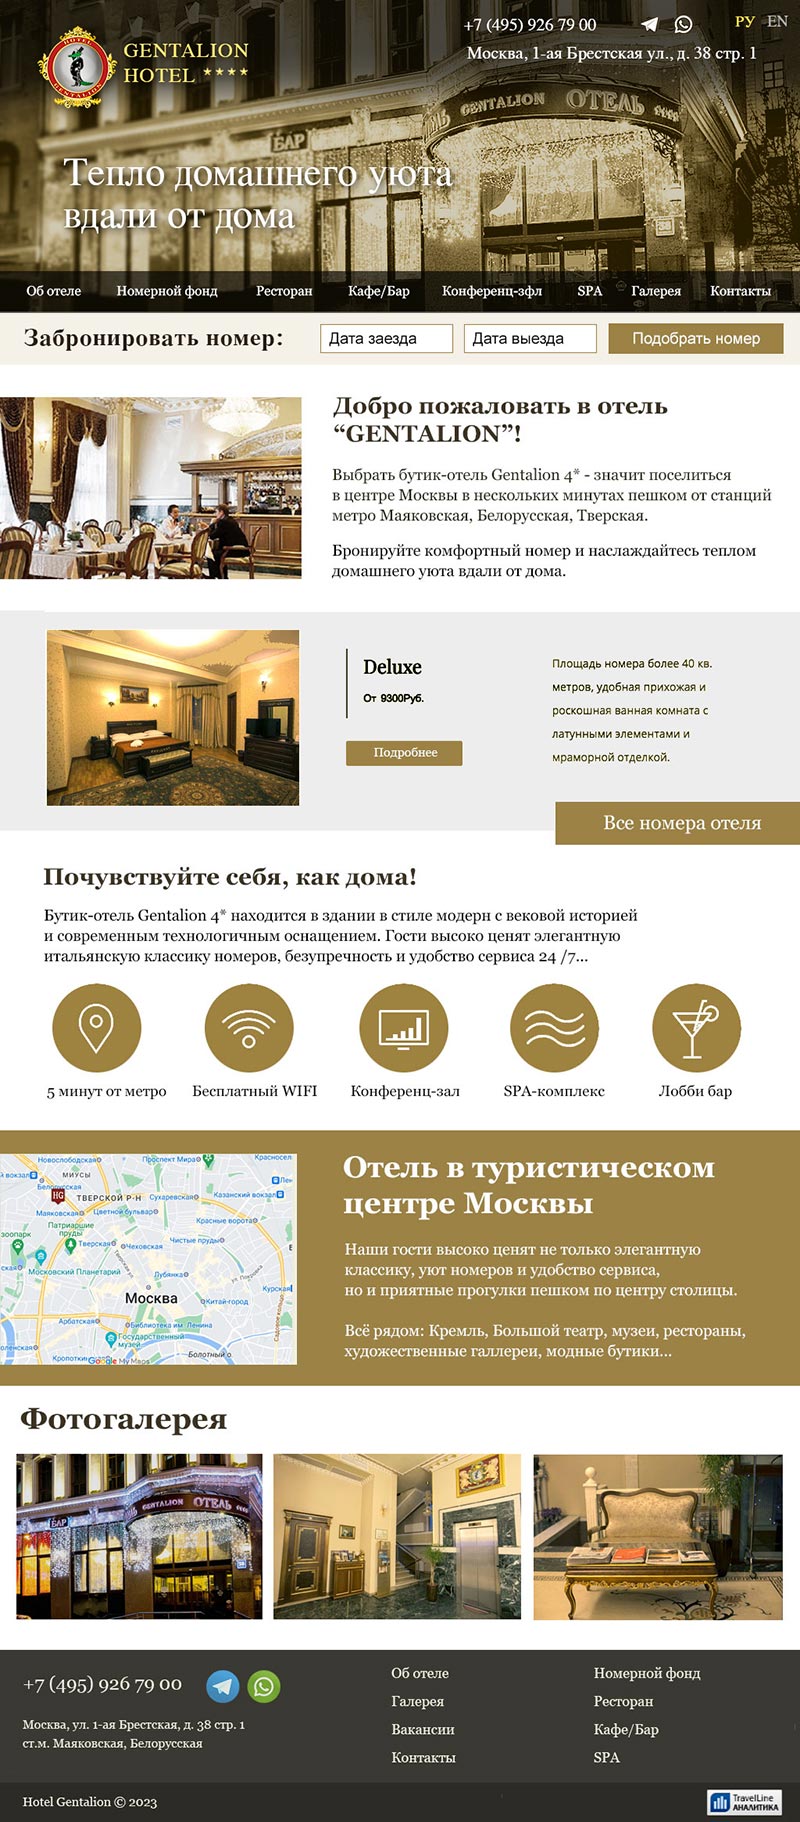 Дизайн сайта московского отеля